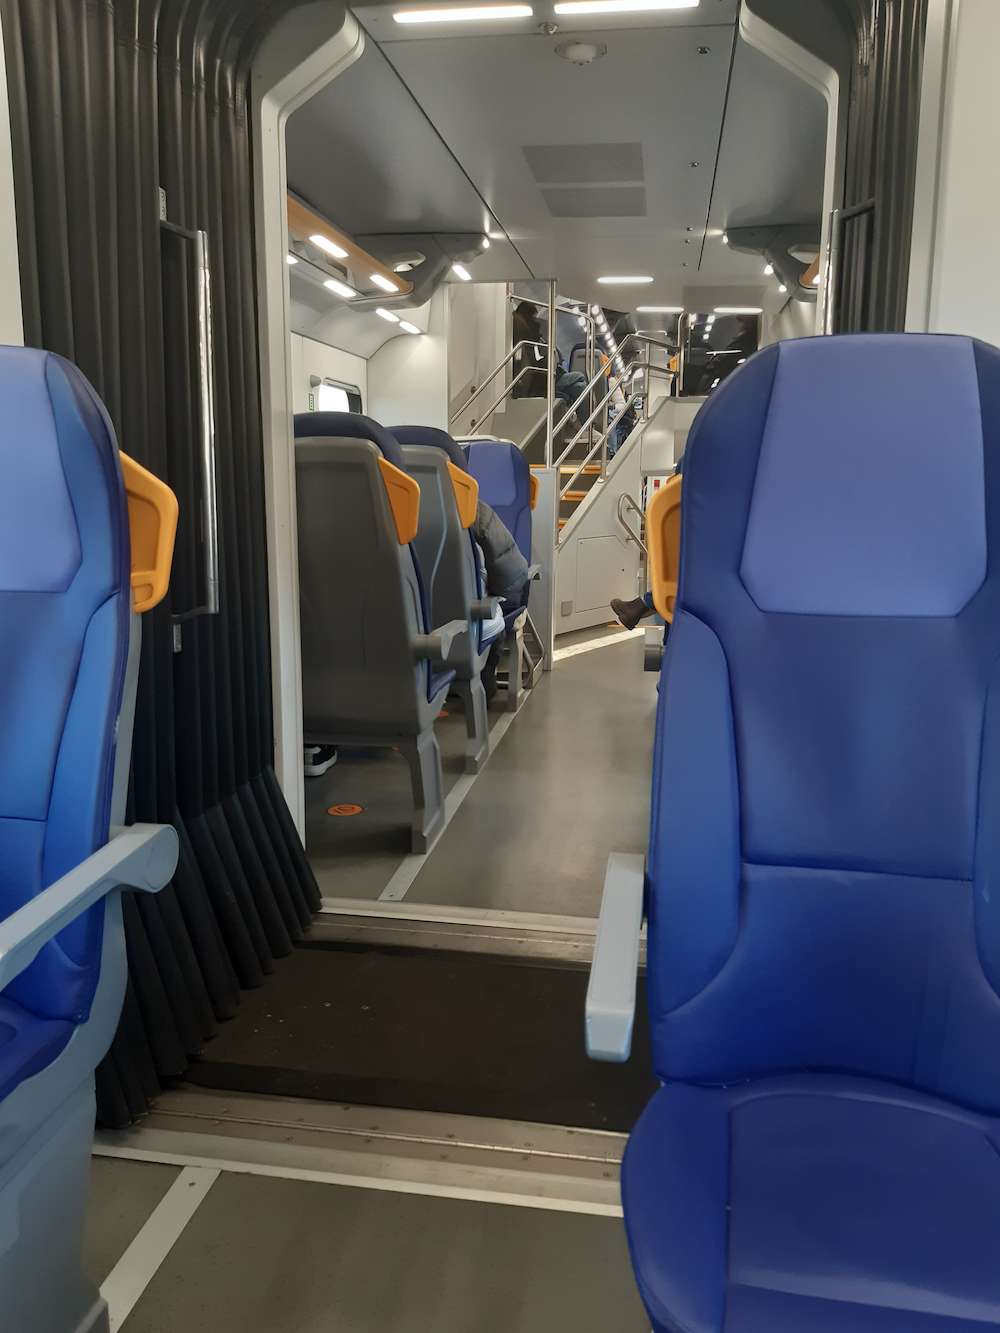 Clean interior of Trenitalia regional train